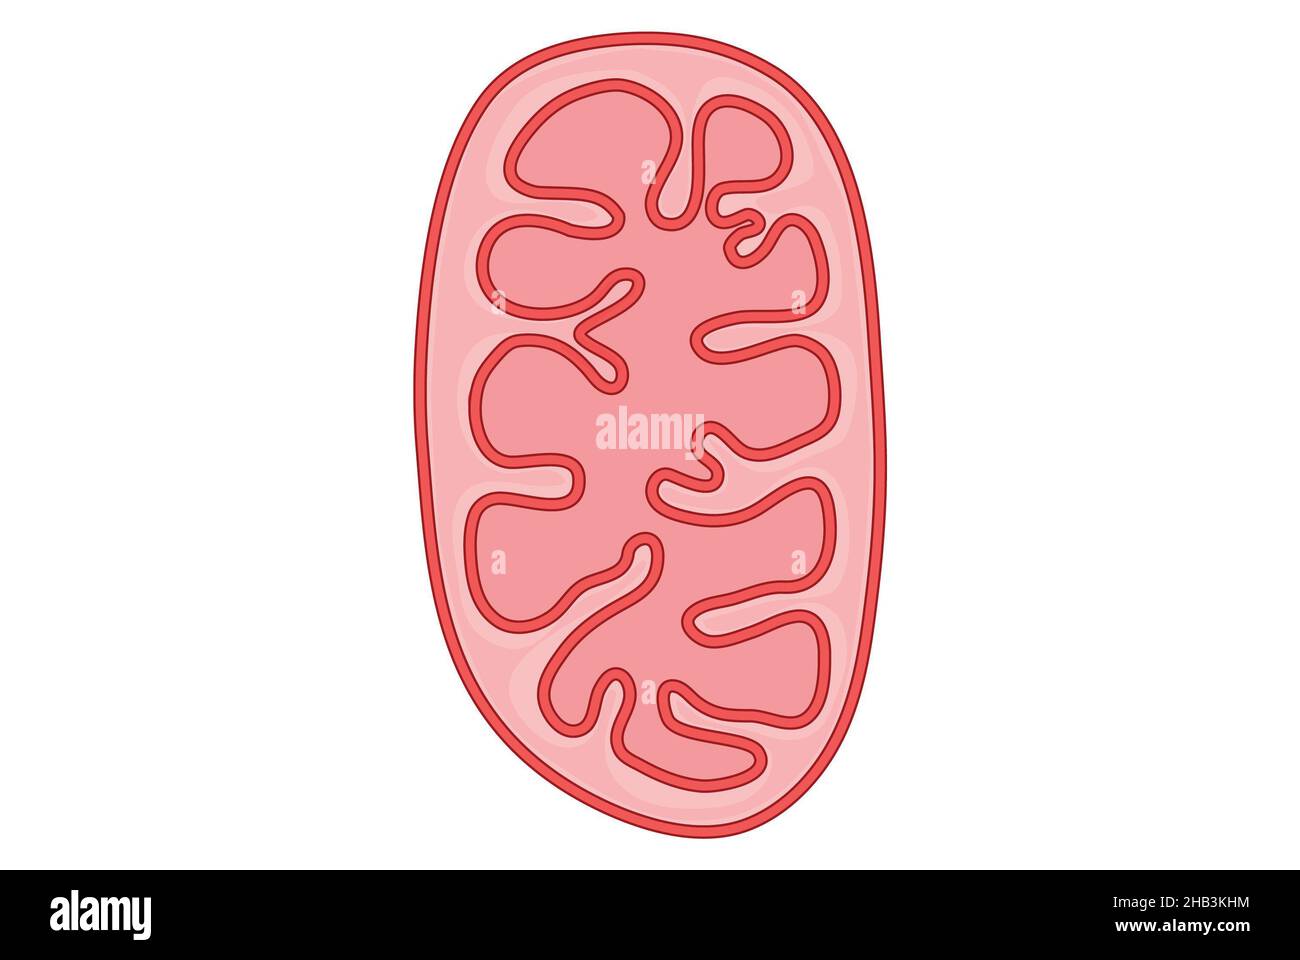 Einfache Illustration eines Mitochondrions in der Zelle Stockfoto